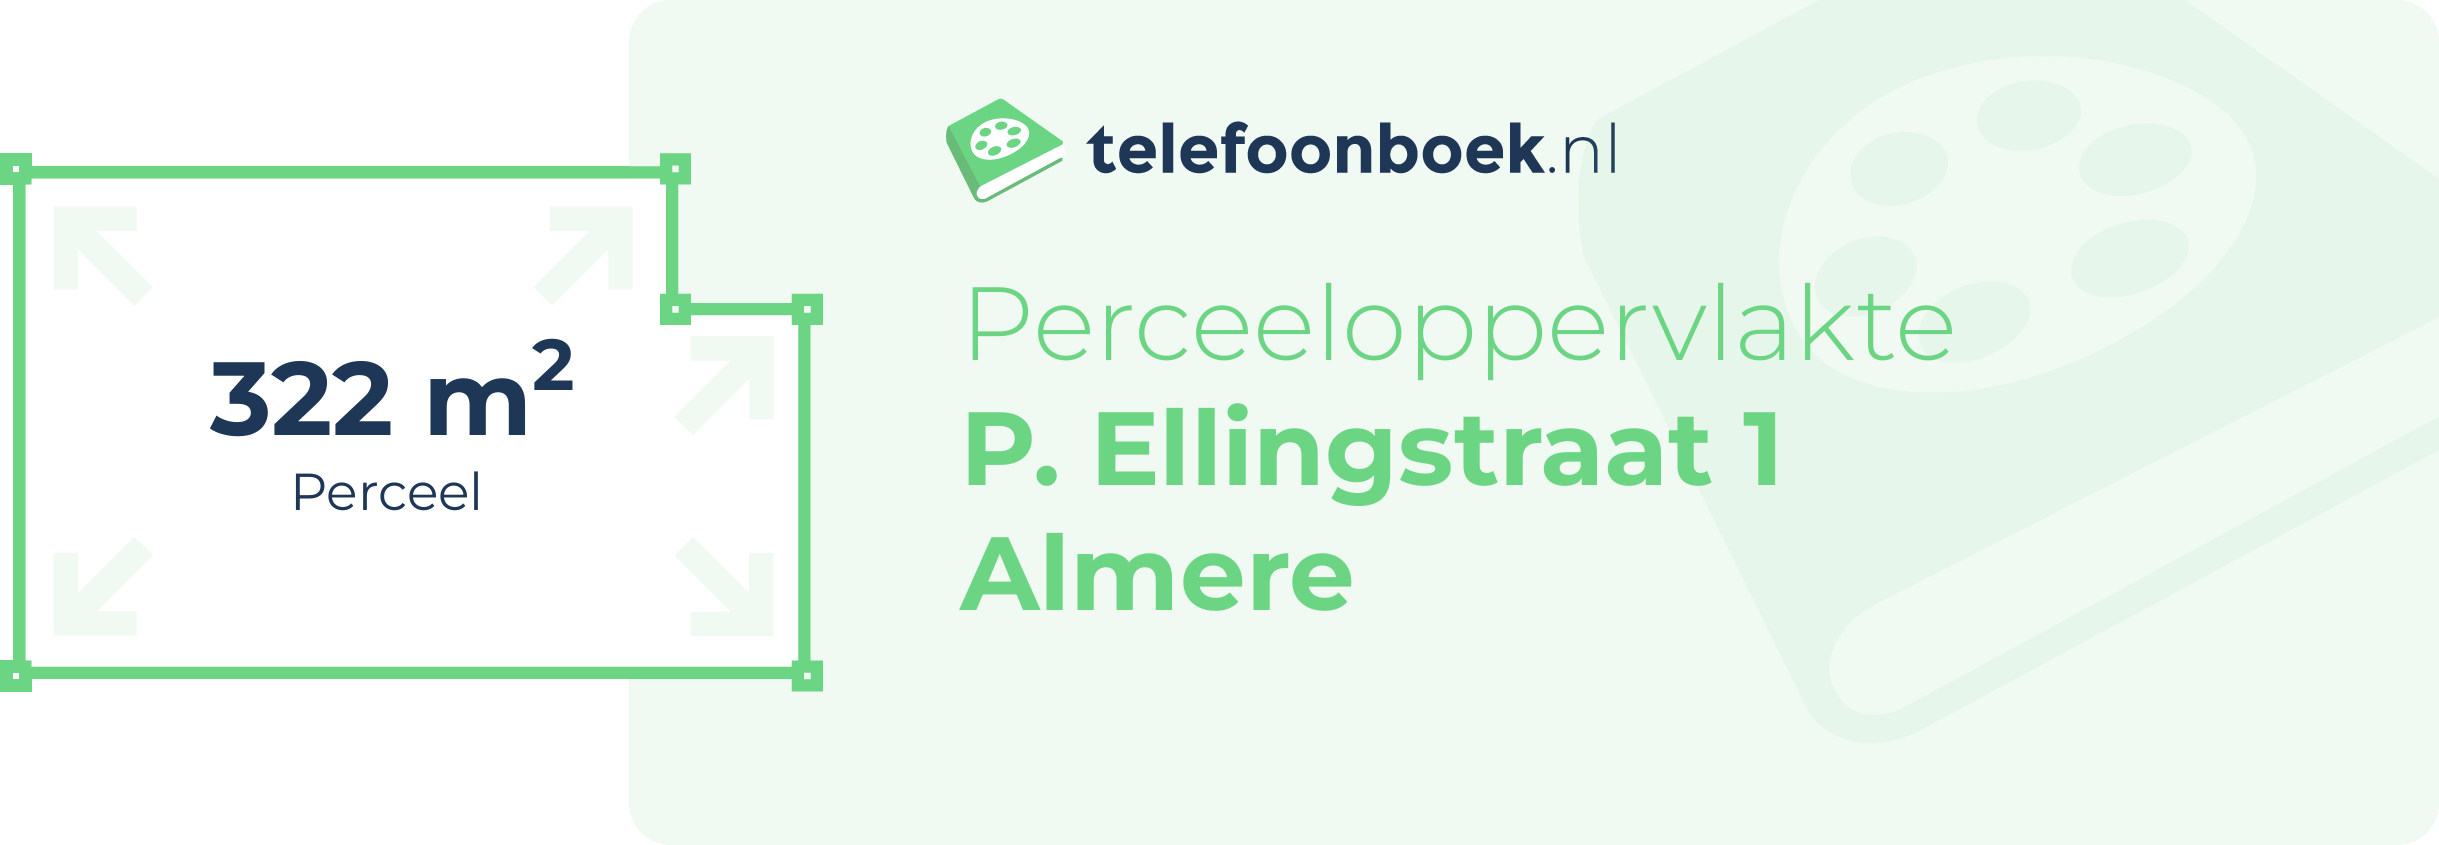 Perceeloppervlakte P. Ellingstraat 1 Almere